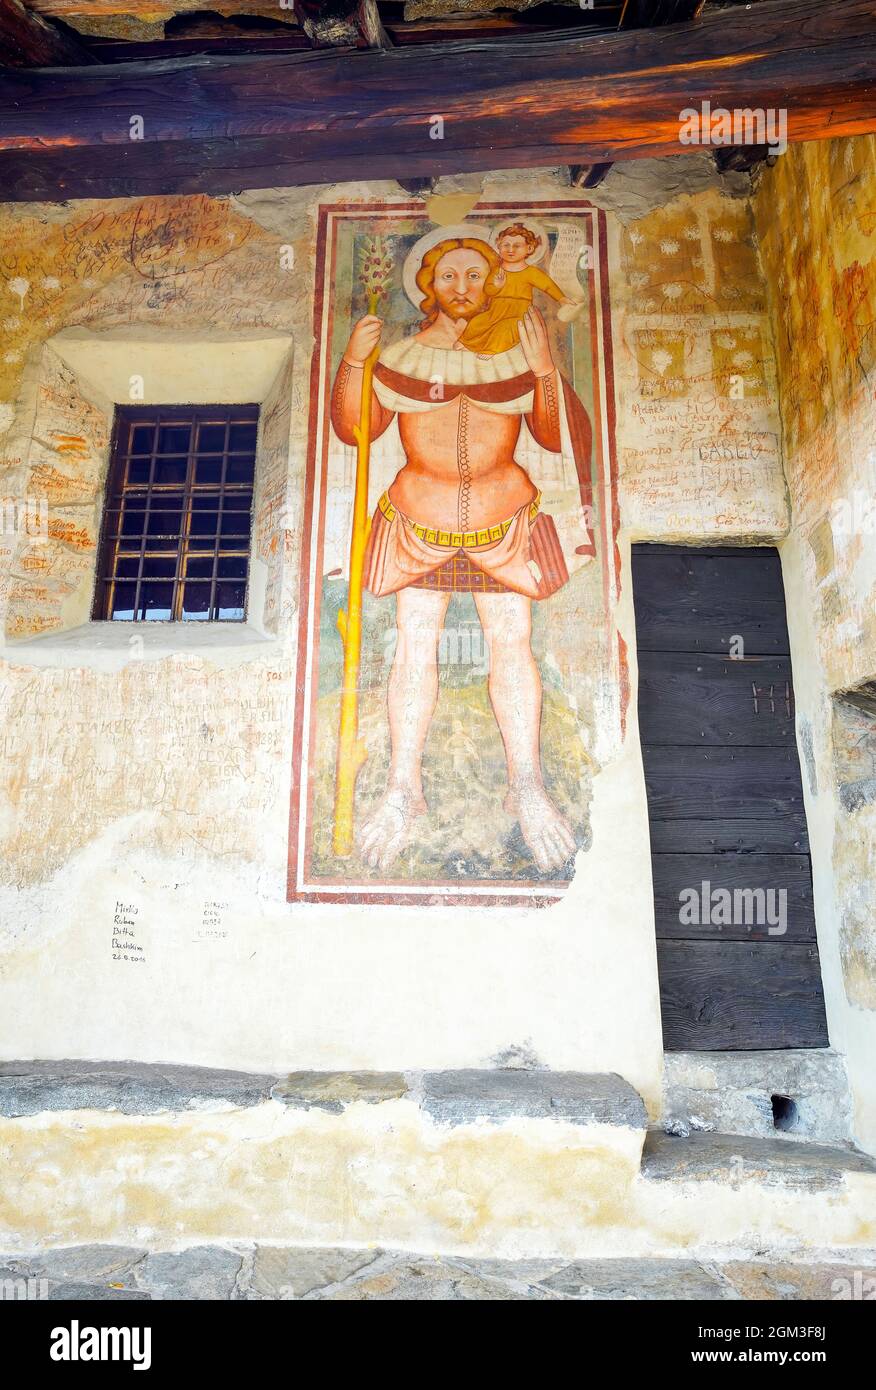 San Cristoforo (Christopher), parmi les plus anciennes fresques de l'église romane San Bernardo, Monte Carasso, canton du Tessin, Suisse. Banque D'Images